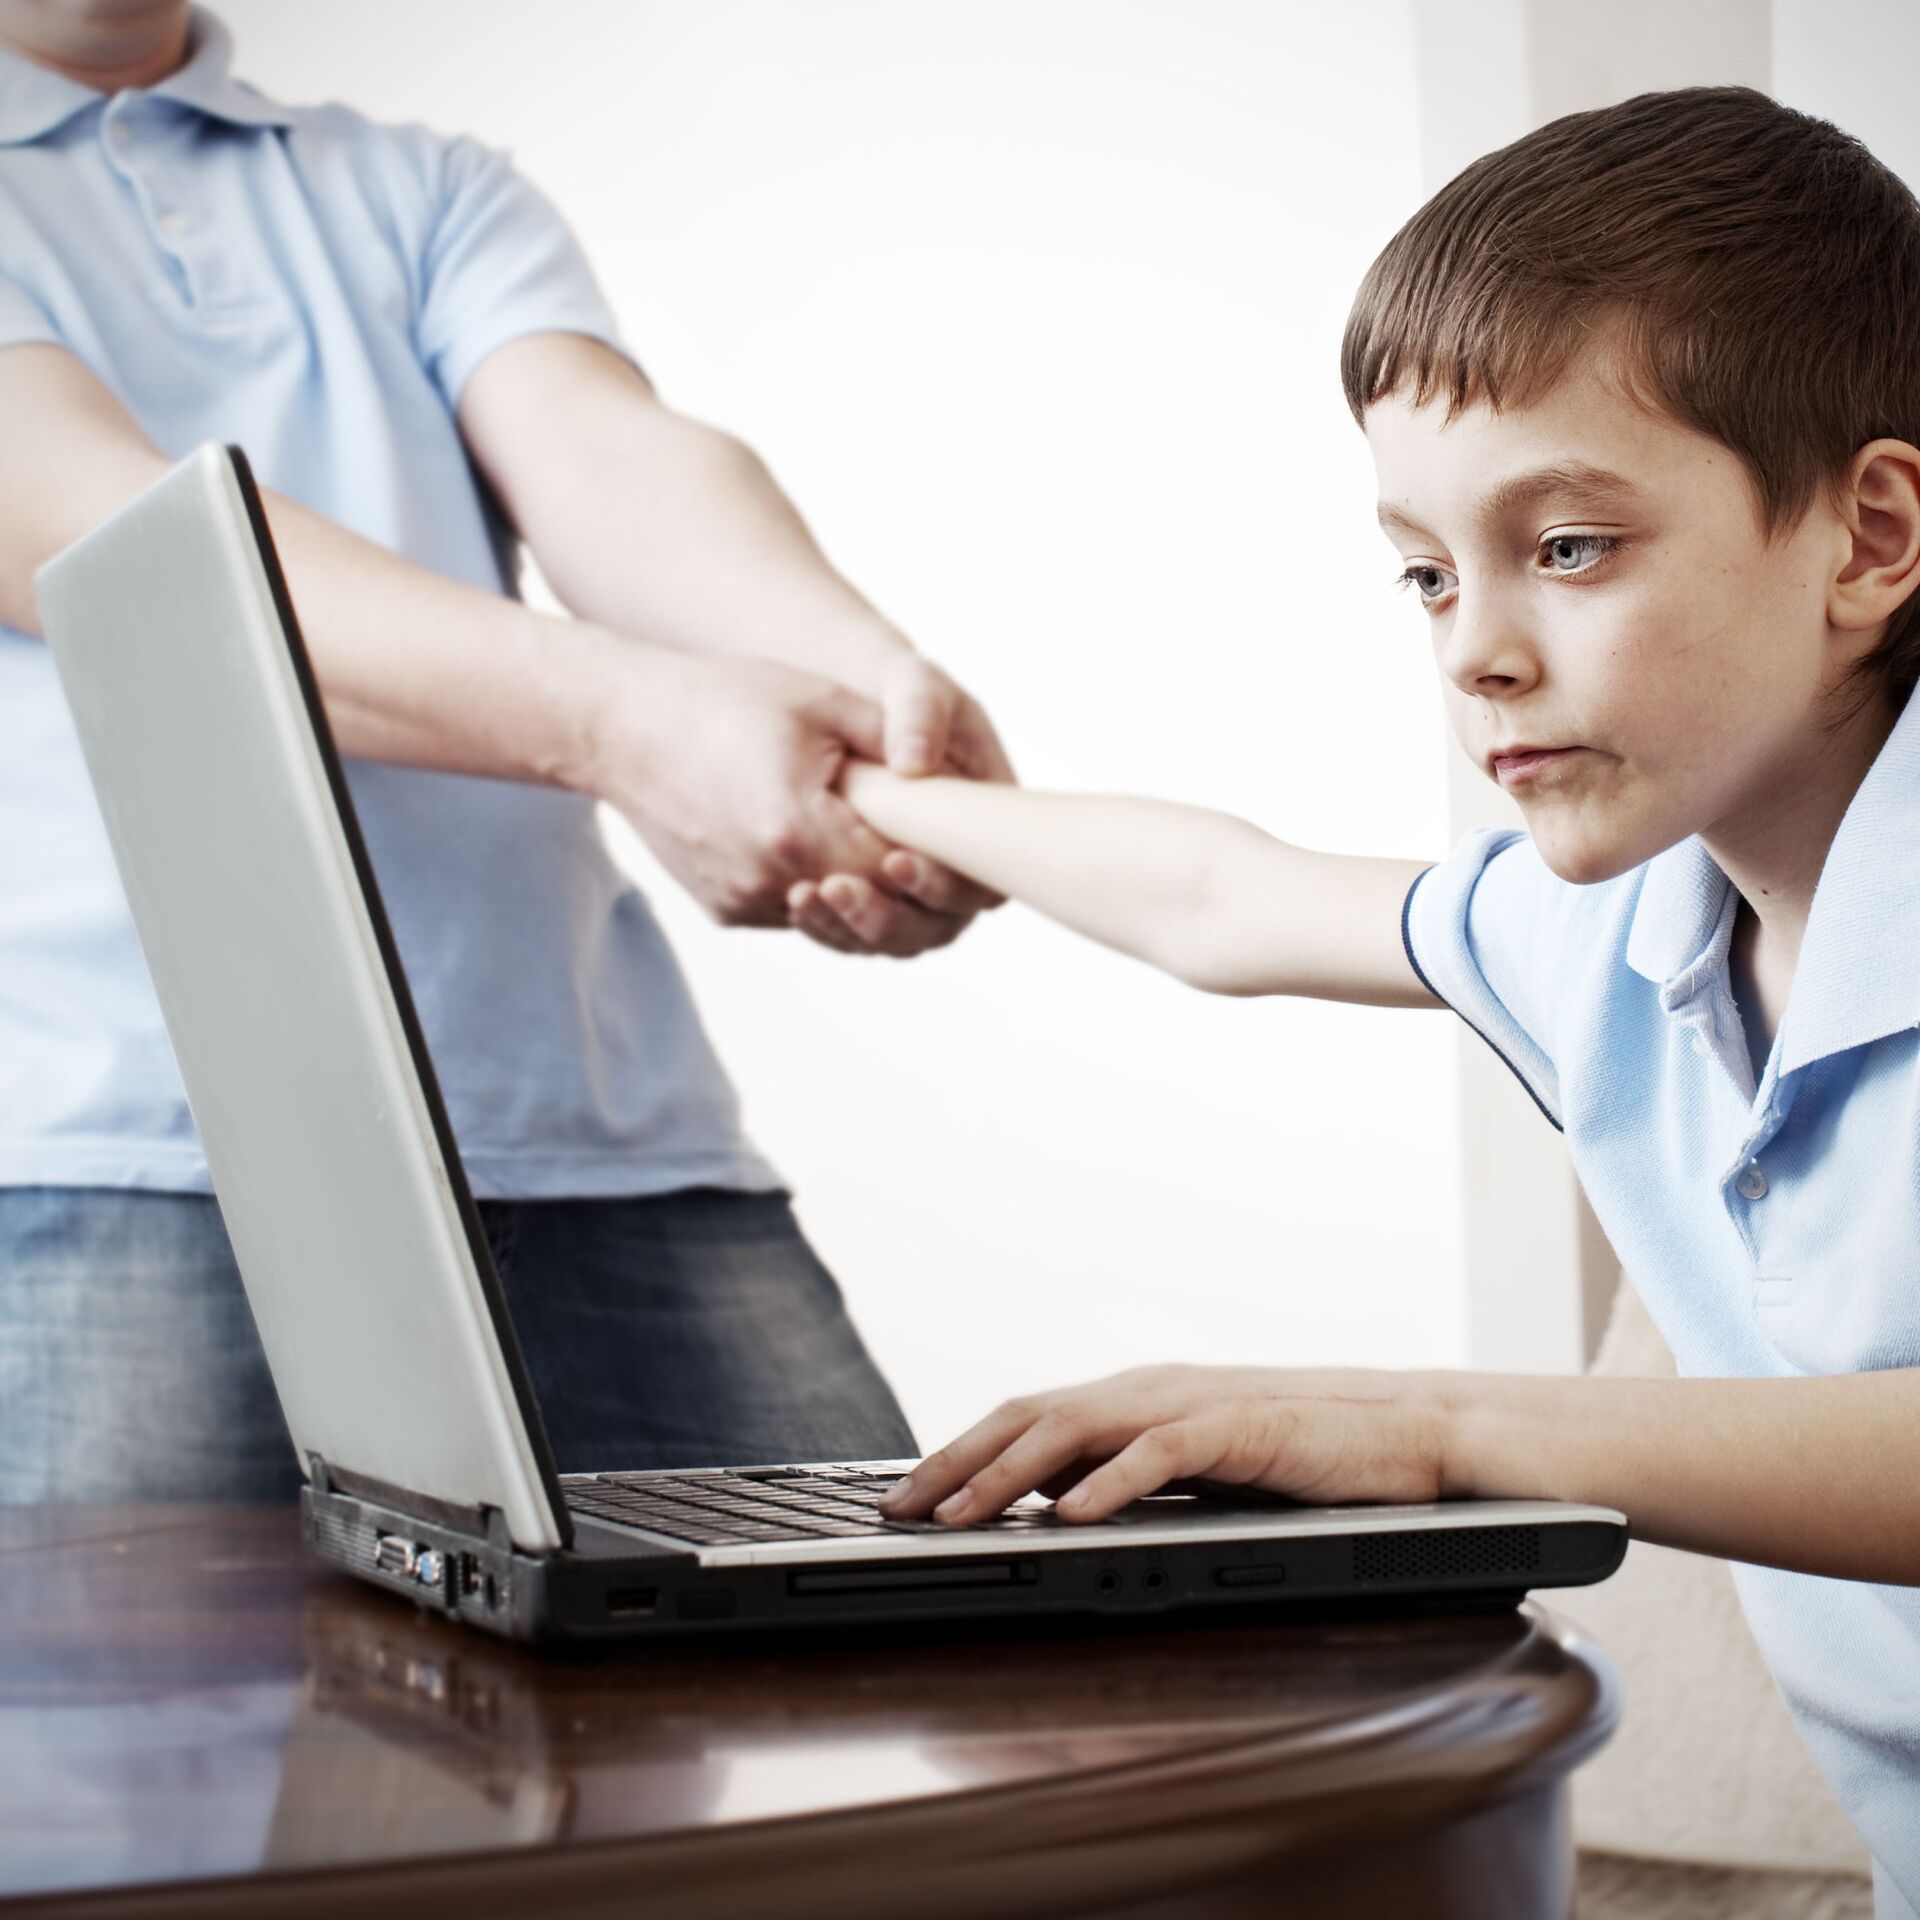 كيف نحمي الاطفال  من فلتان وحوش الانترنت على شبكة التواصل الاجتماعي ؟